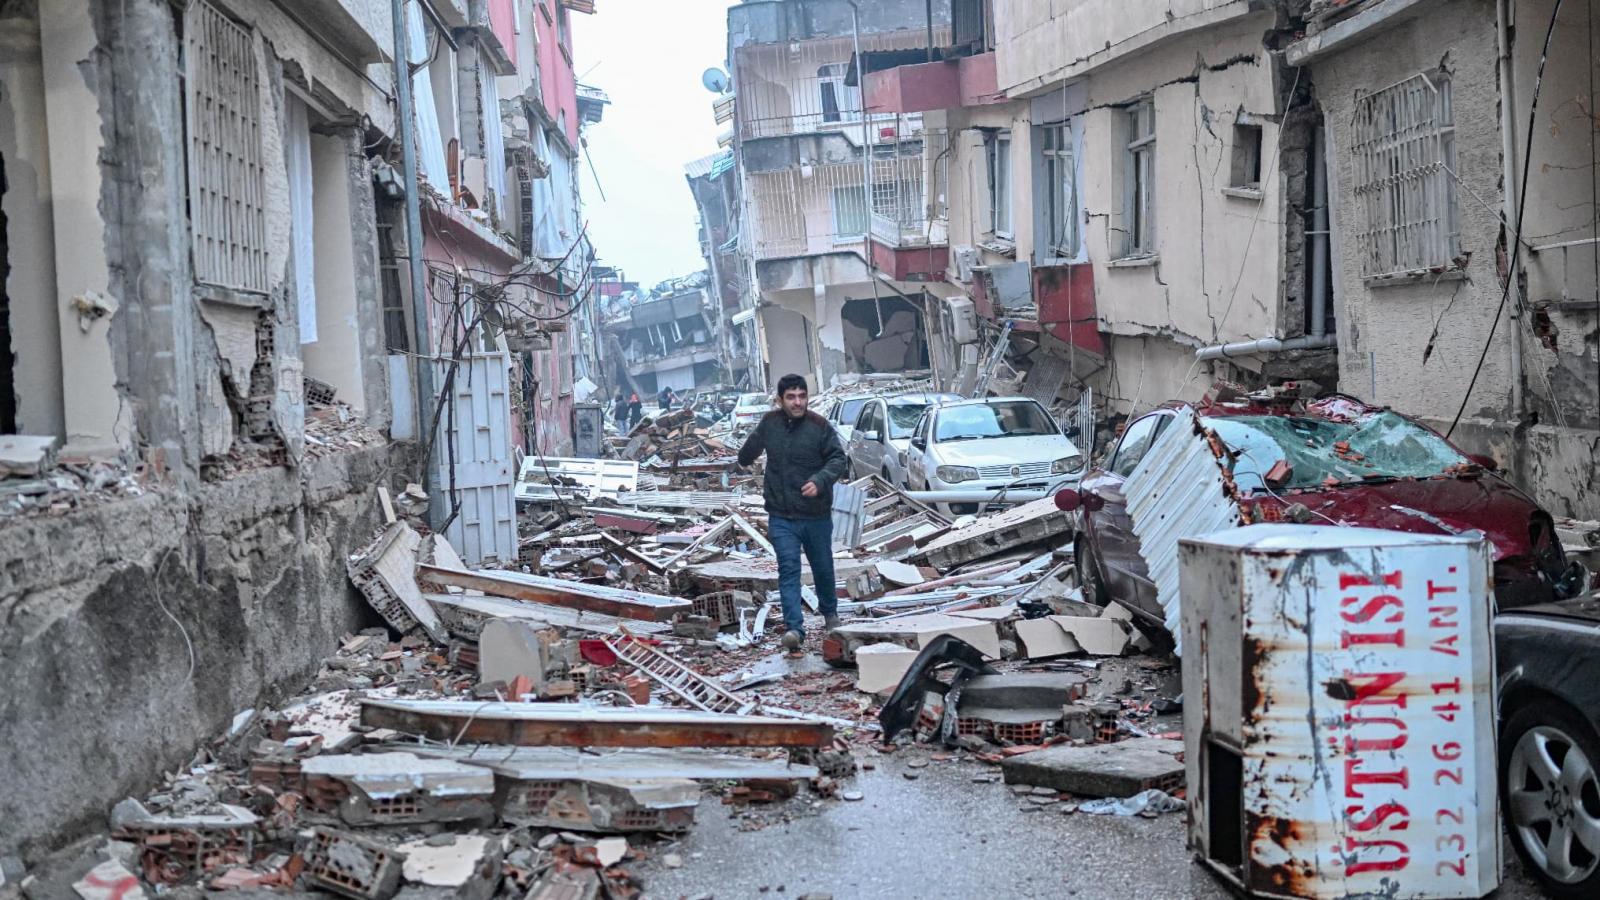 Turquie: 3 nouveaux rescapés sortis des ruines plus de 260 heures après le séisme